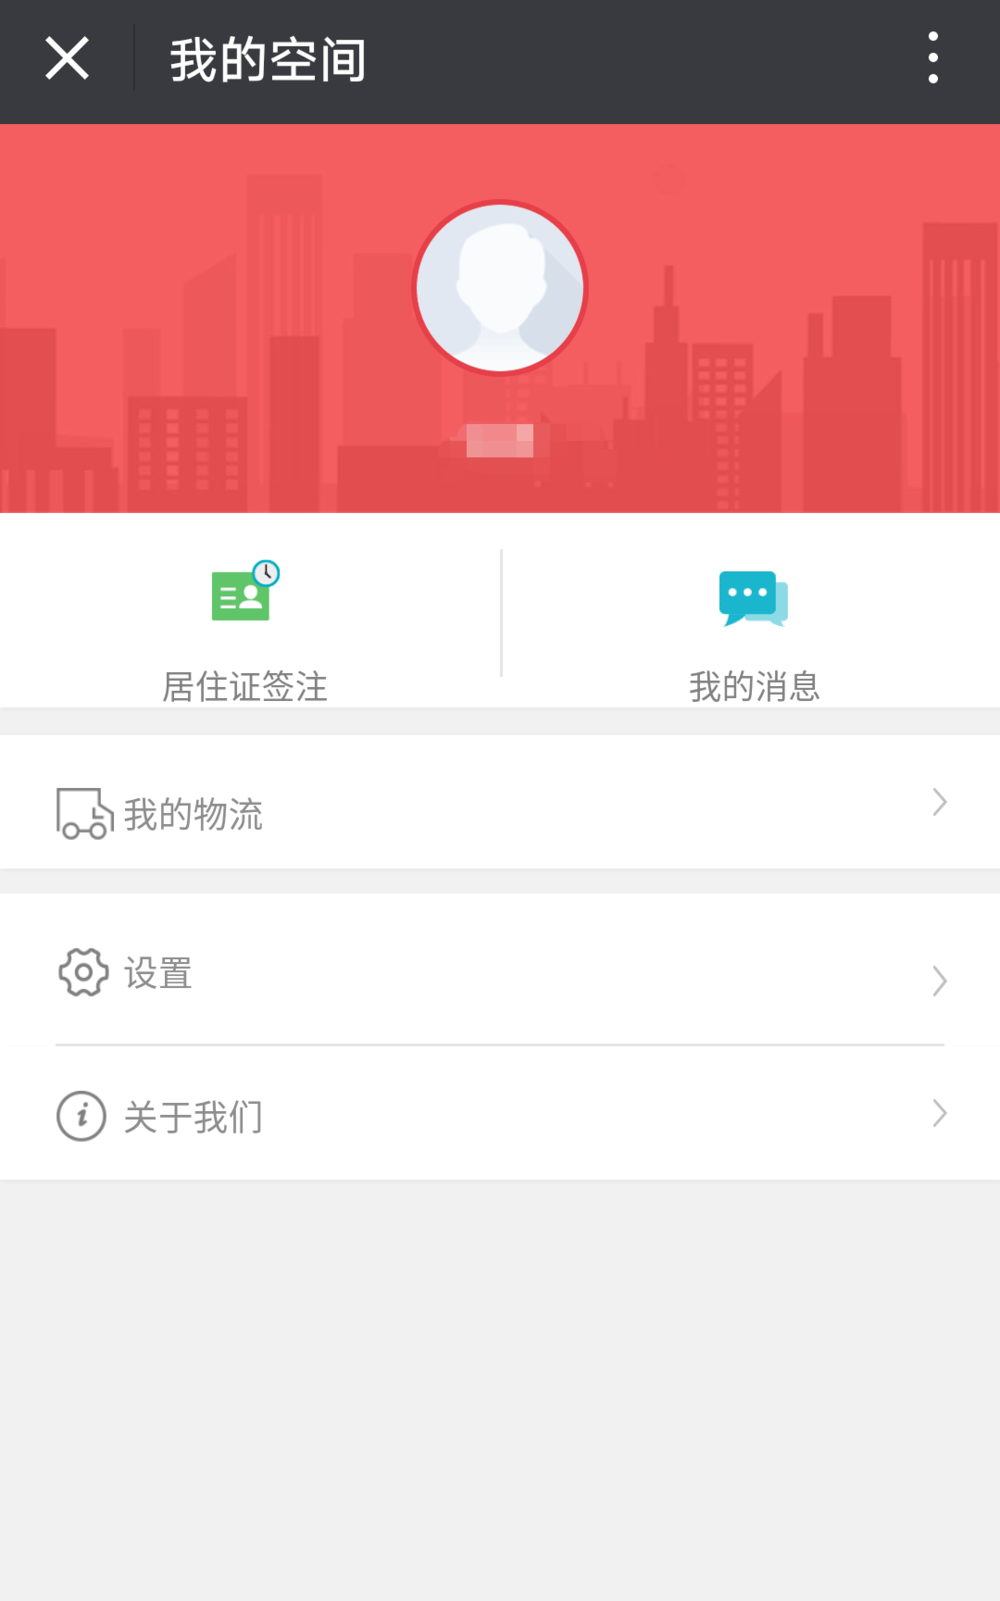 在微信公众号中进行北京市居住证申办签注的方法介绍